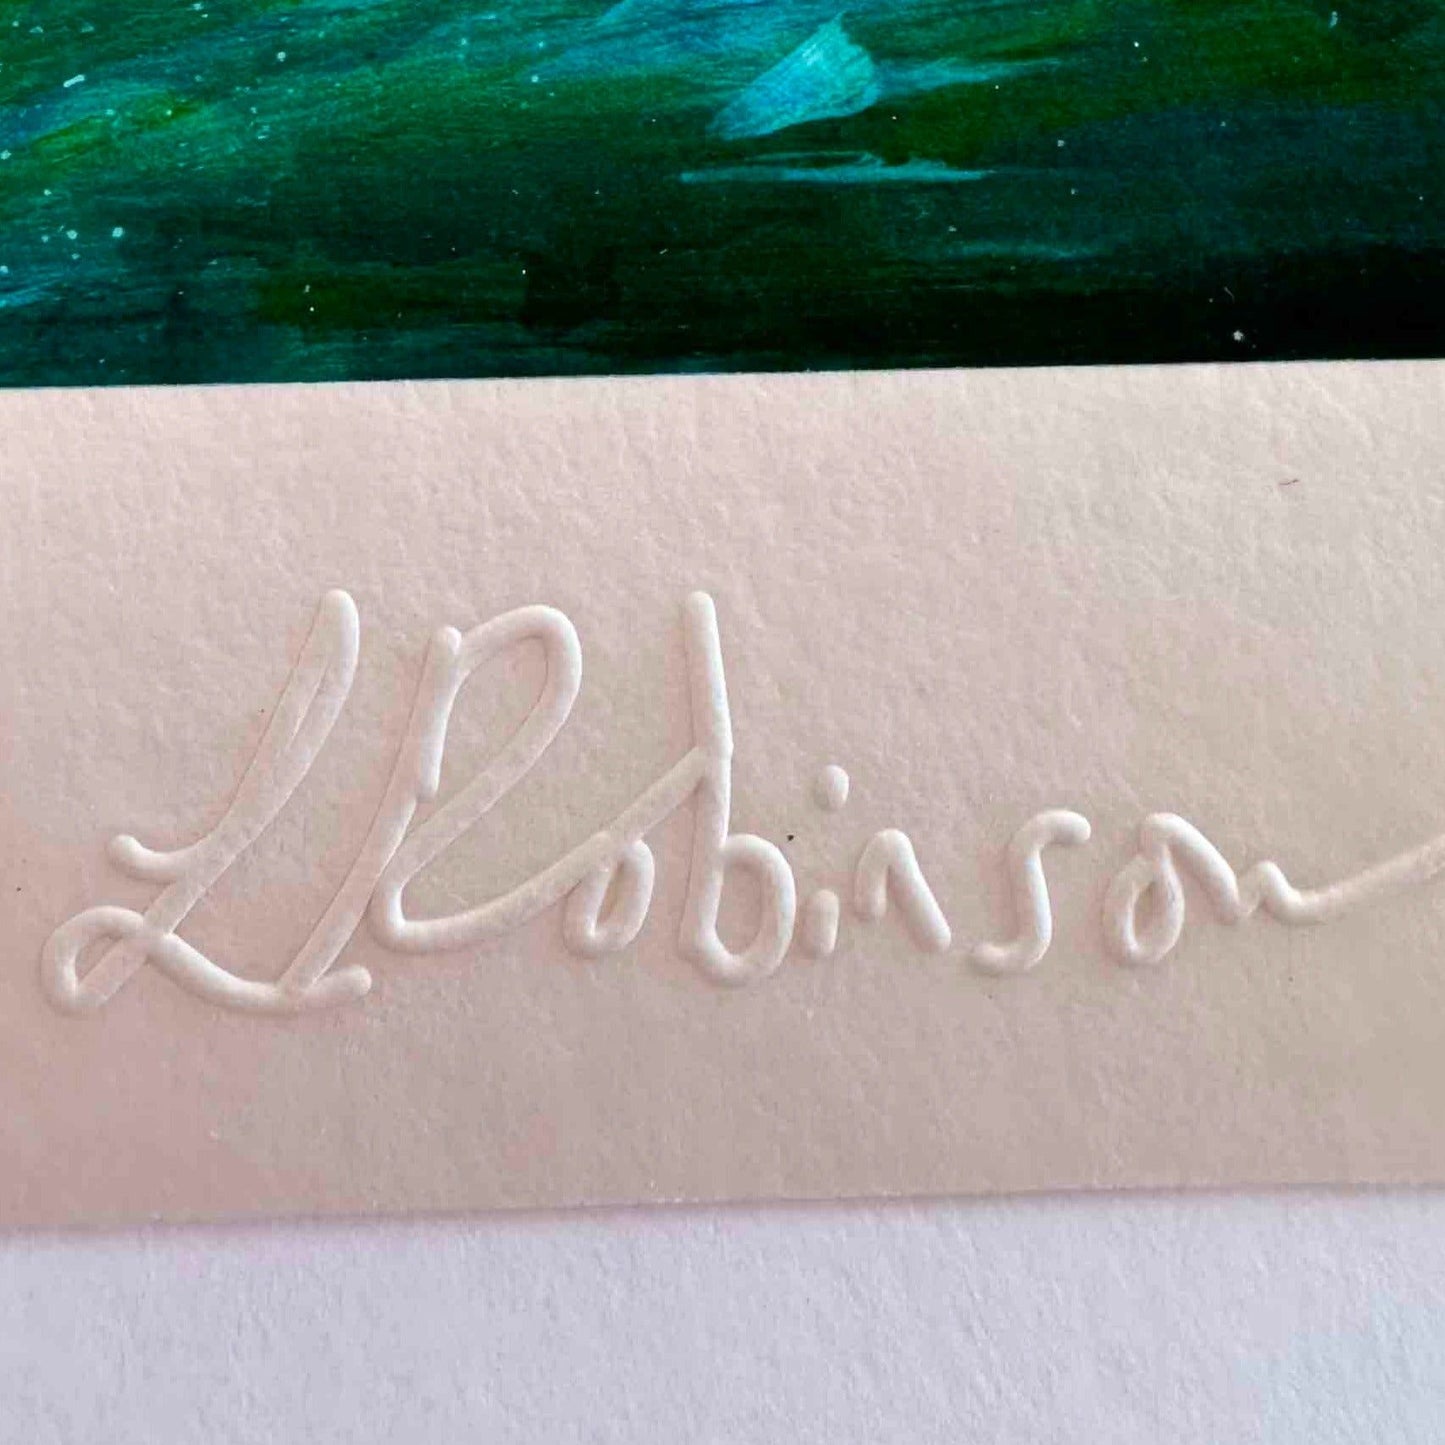 Leana Robinson Art embossed signature